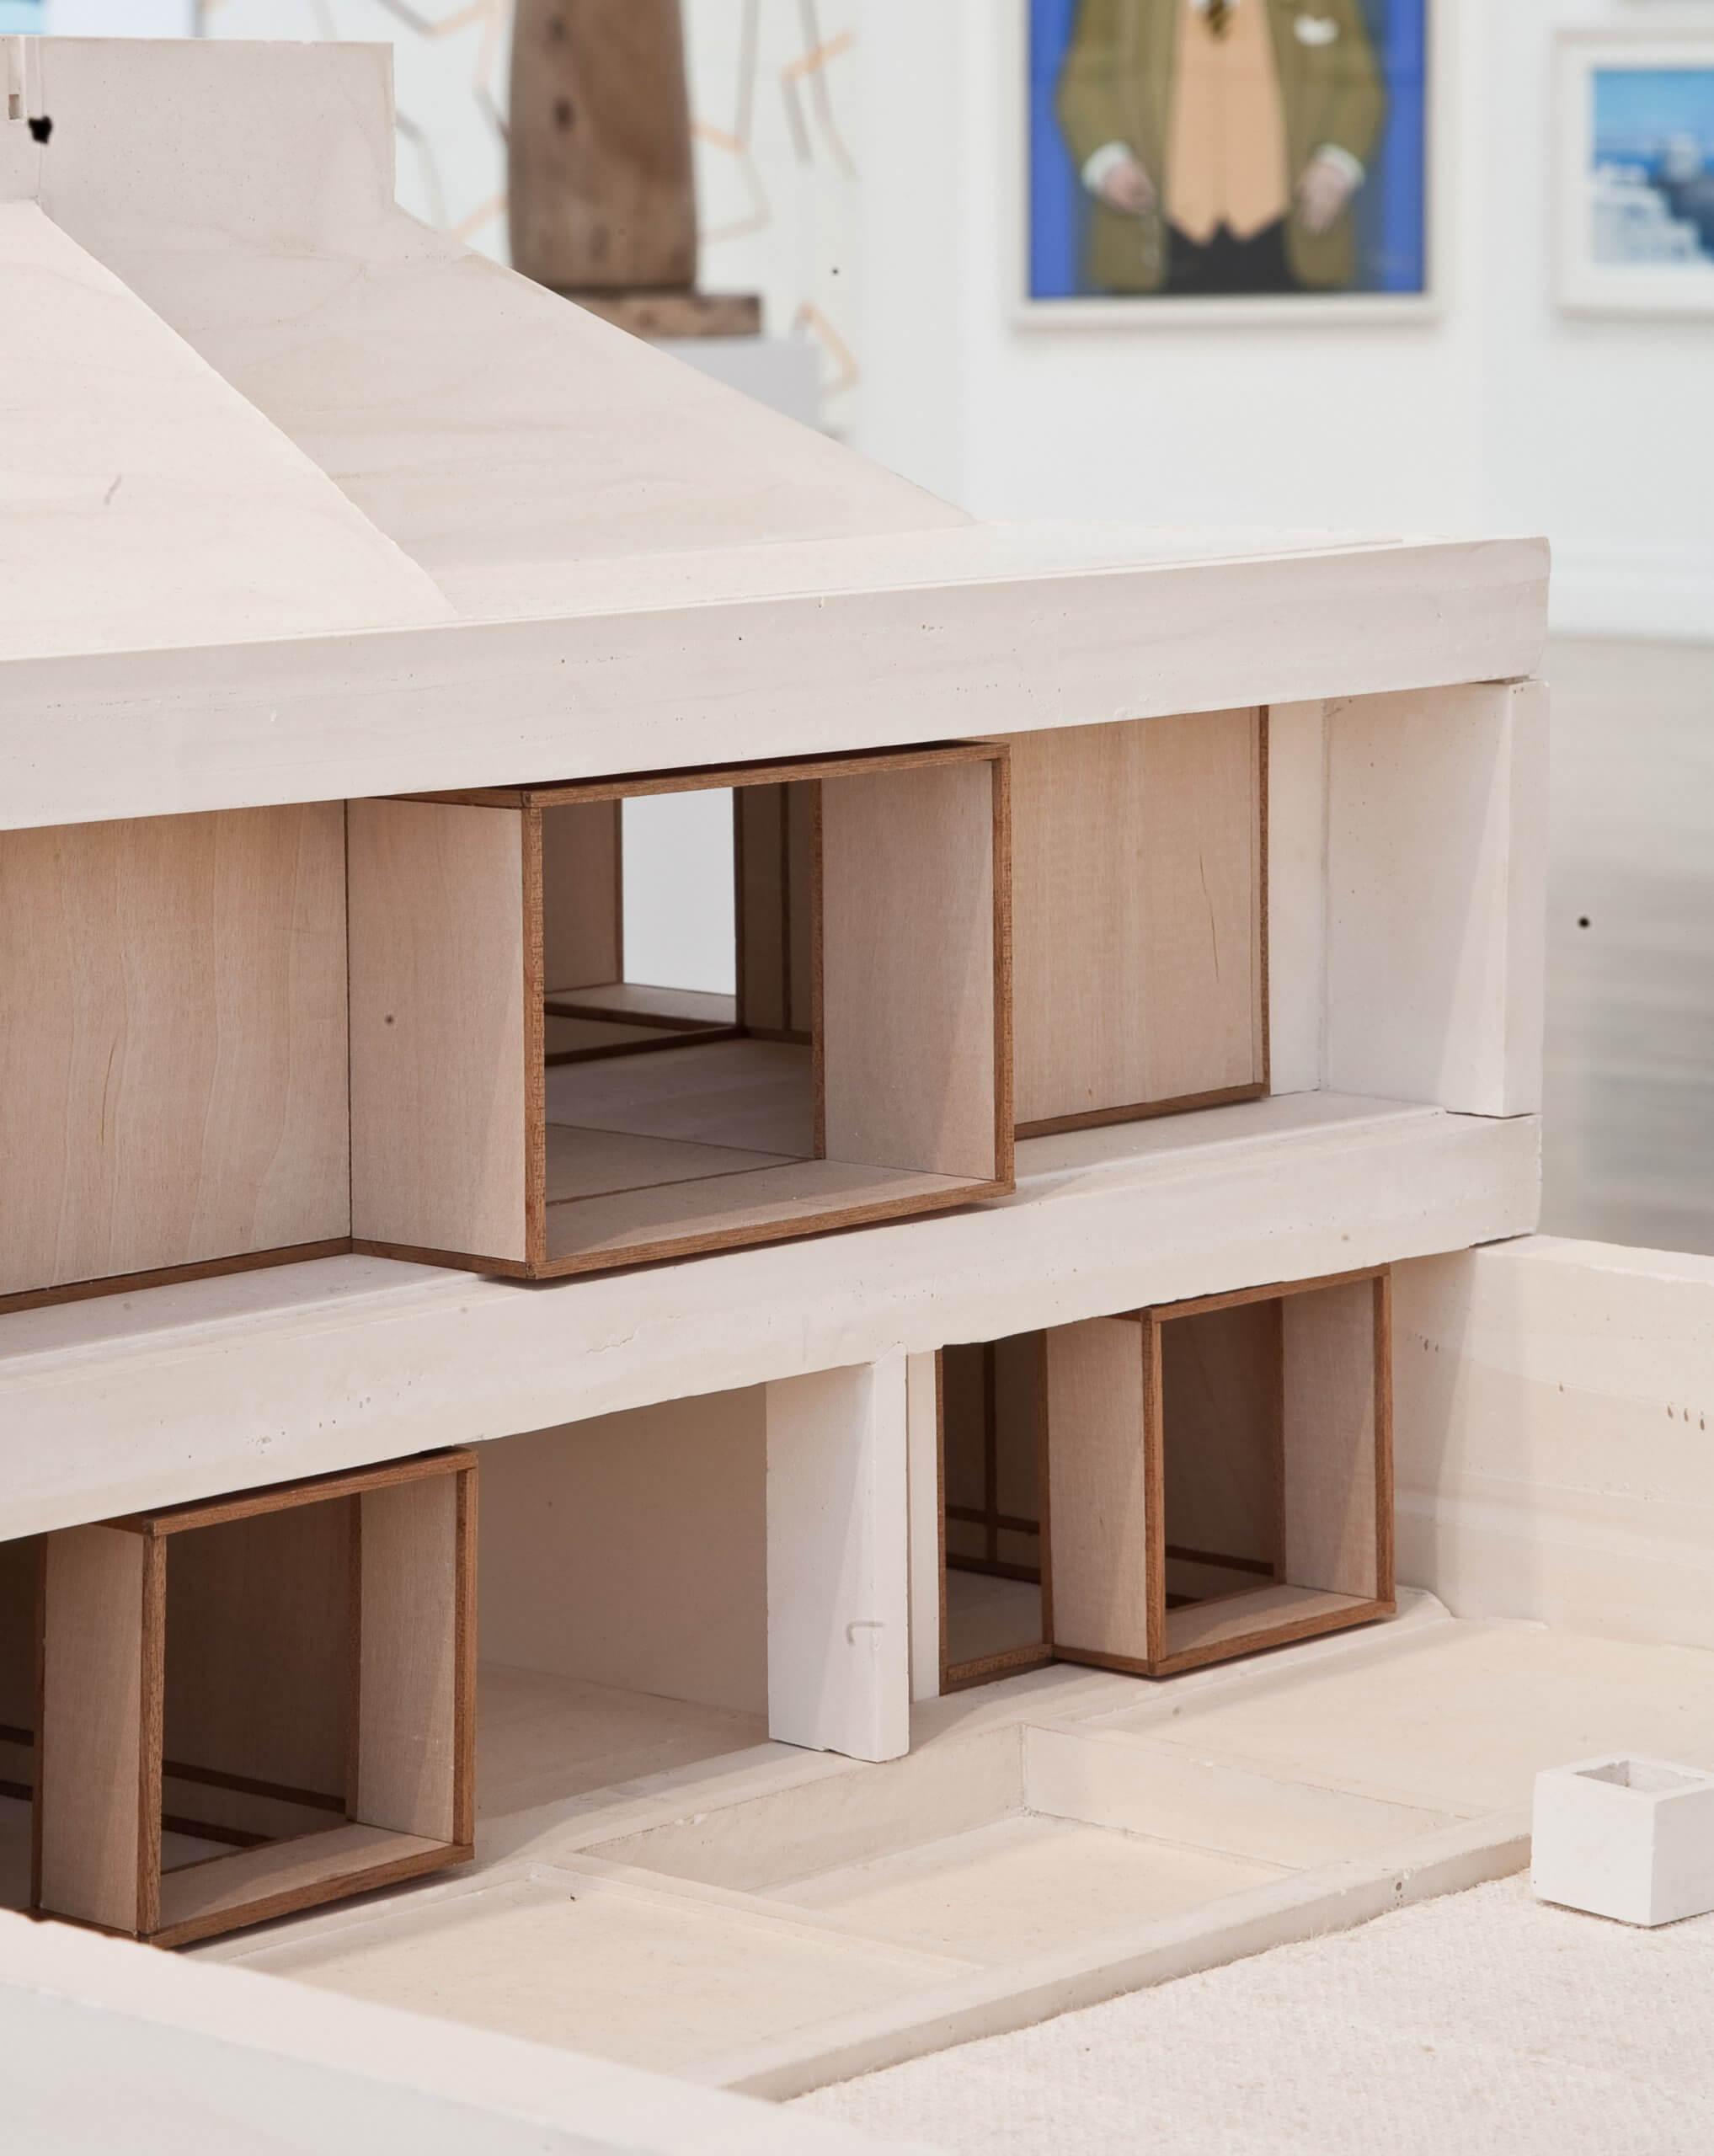 Steve Larkin Architects - Bogwest - Cast Model 02 (c) alice clancy